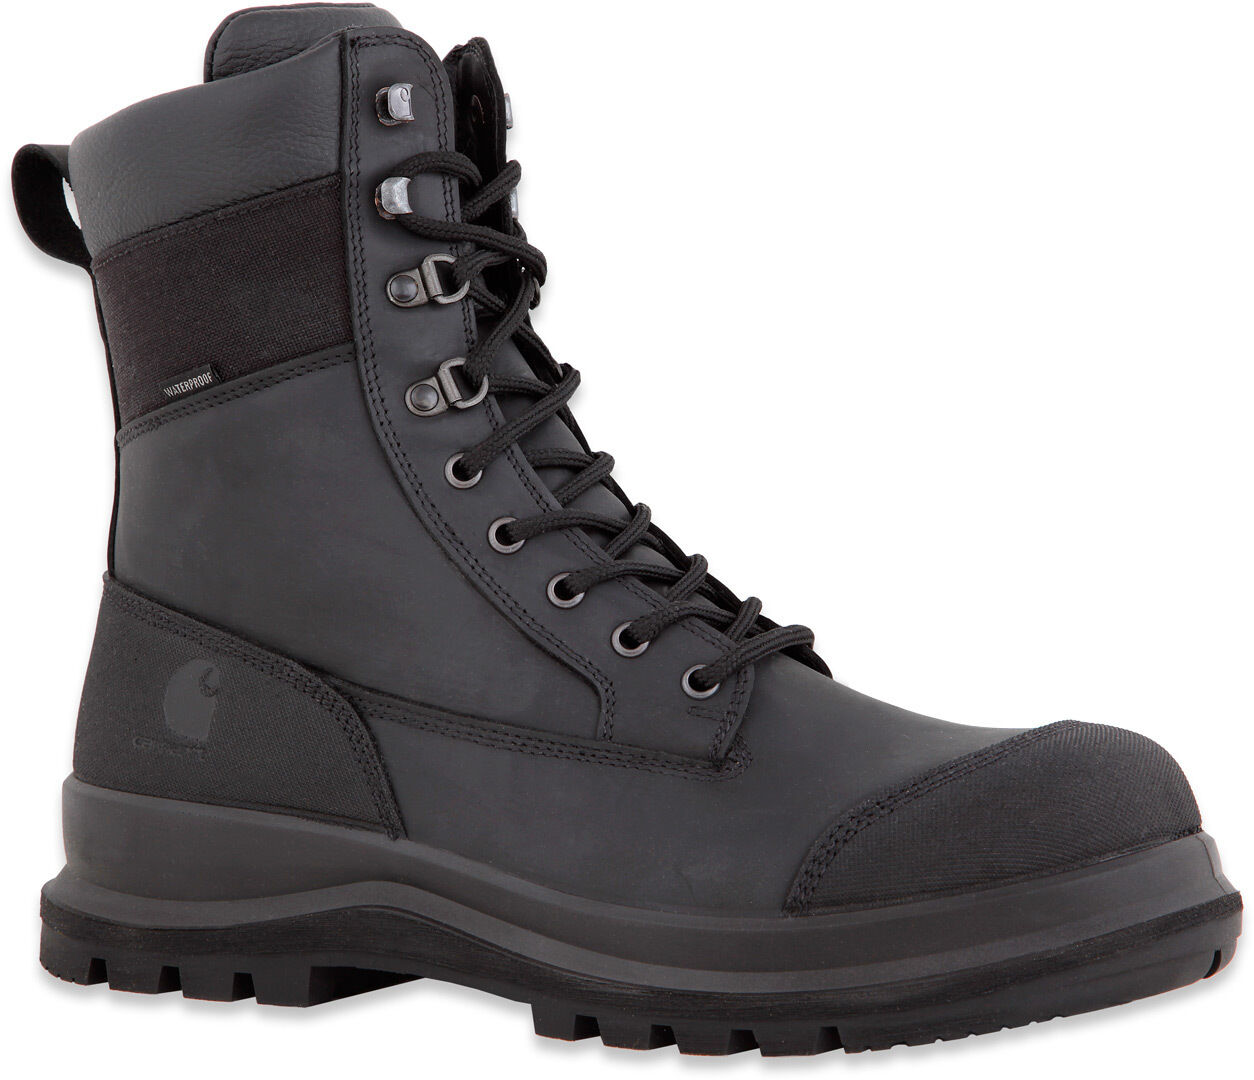 Carhartt Detroit Rugged Flex S3 High Boots  - Black